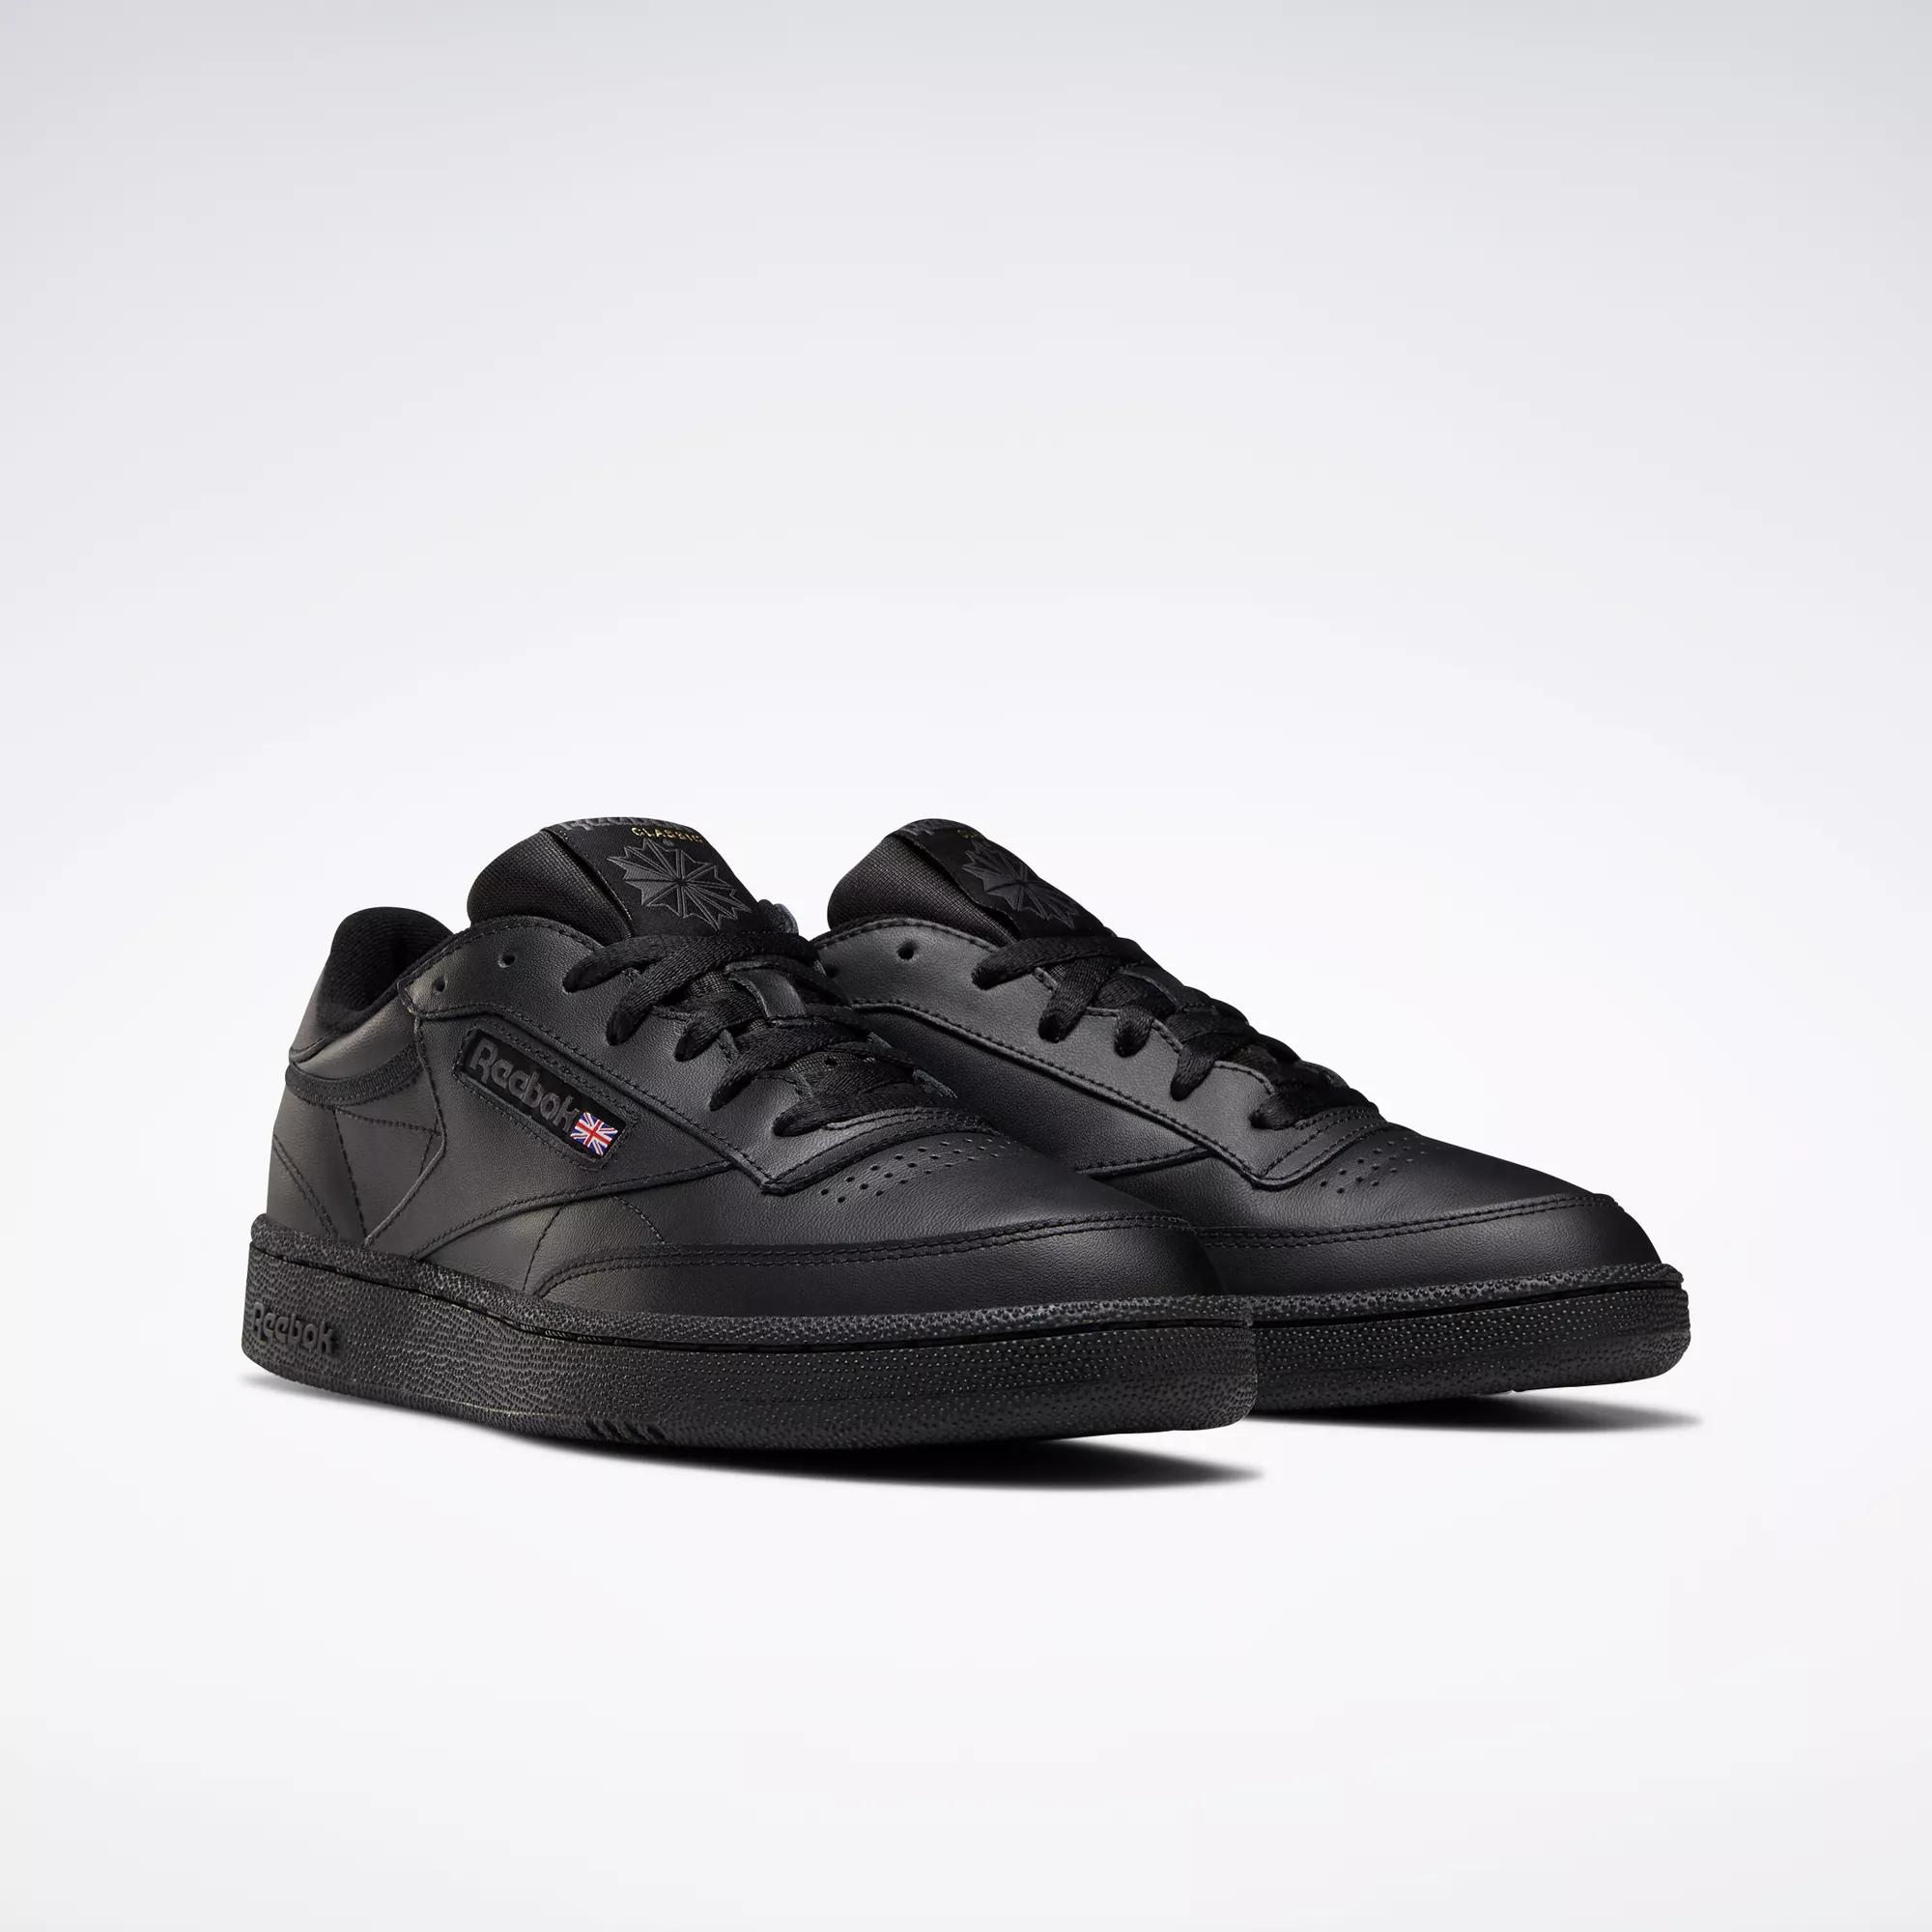 Contaminado Fantasía Reconocimiento Club C 85 Shoes - Black / Charcoal | Reebok